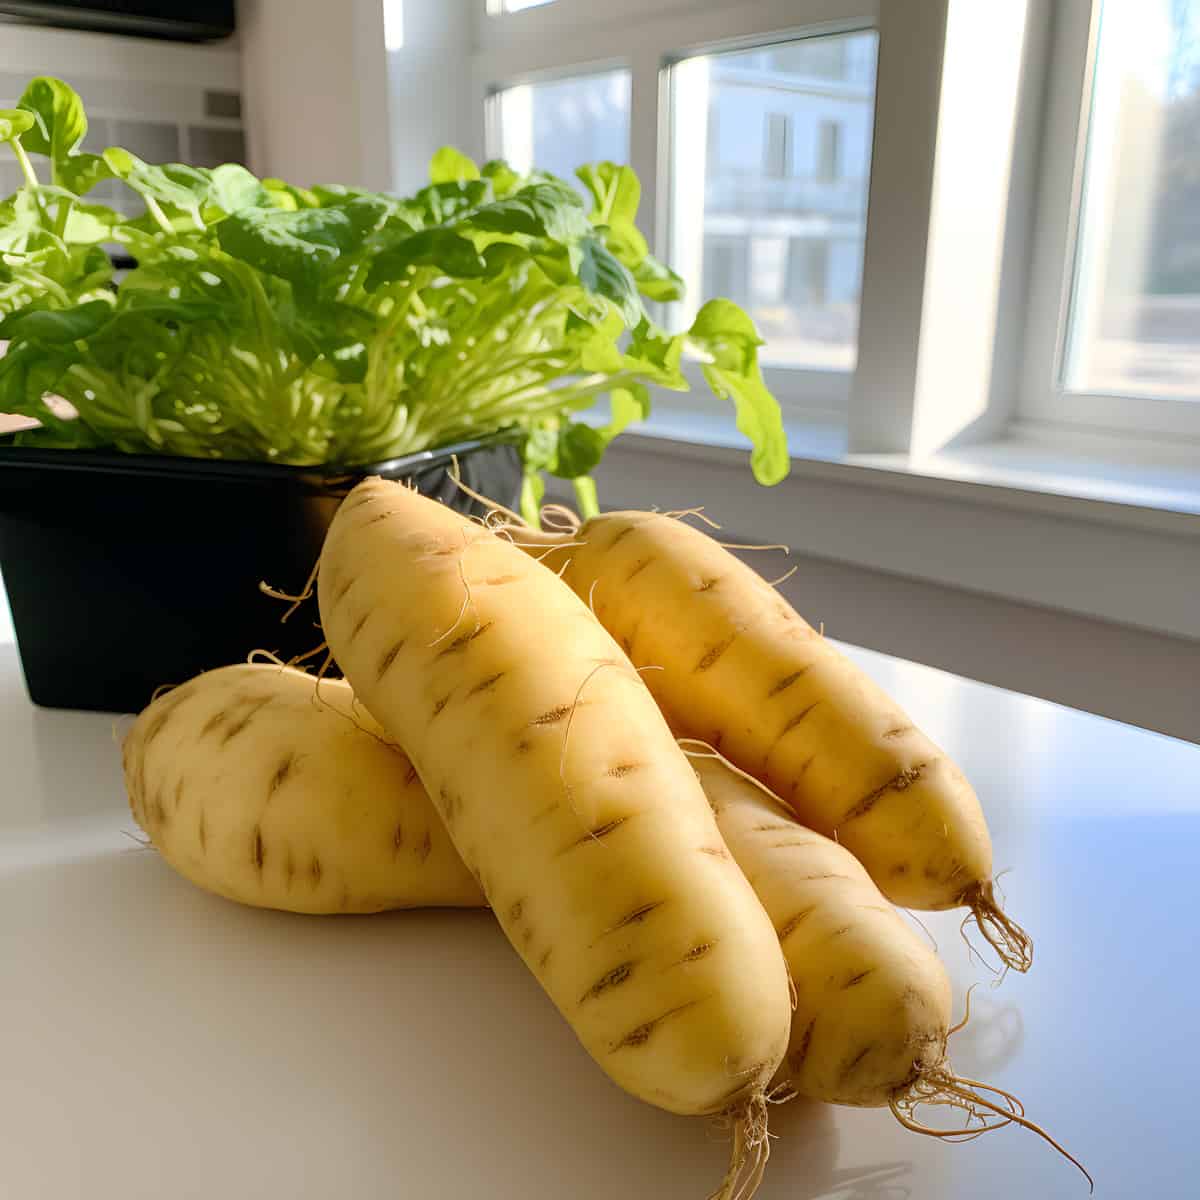 Puikula Potatoes on a kitchen counter